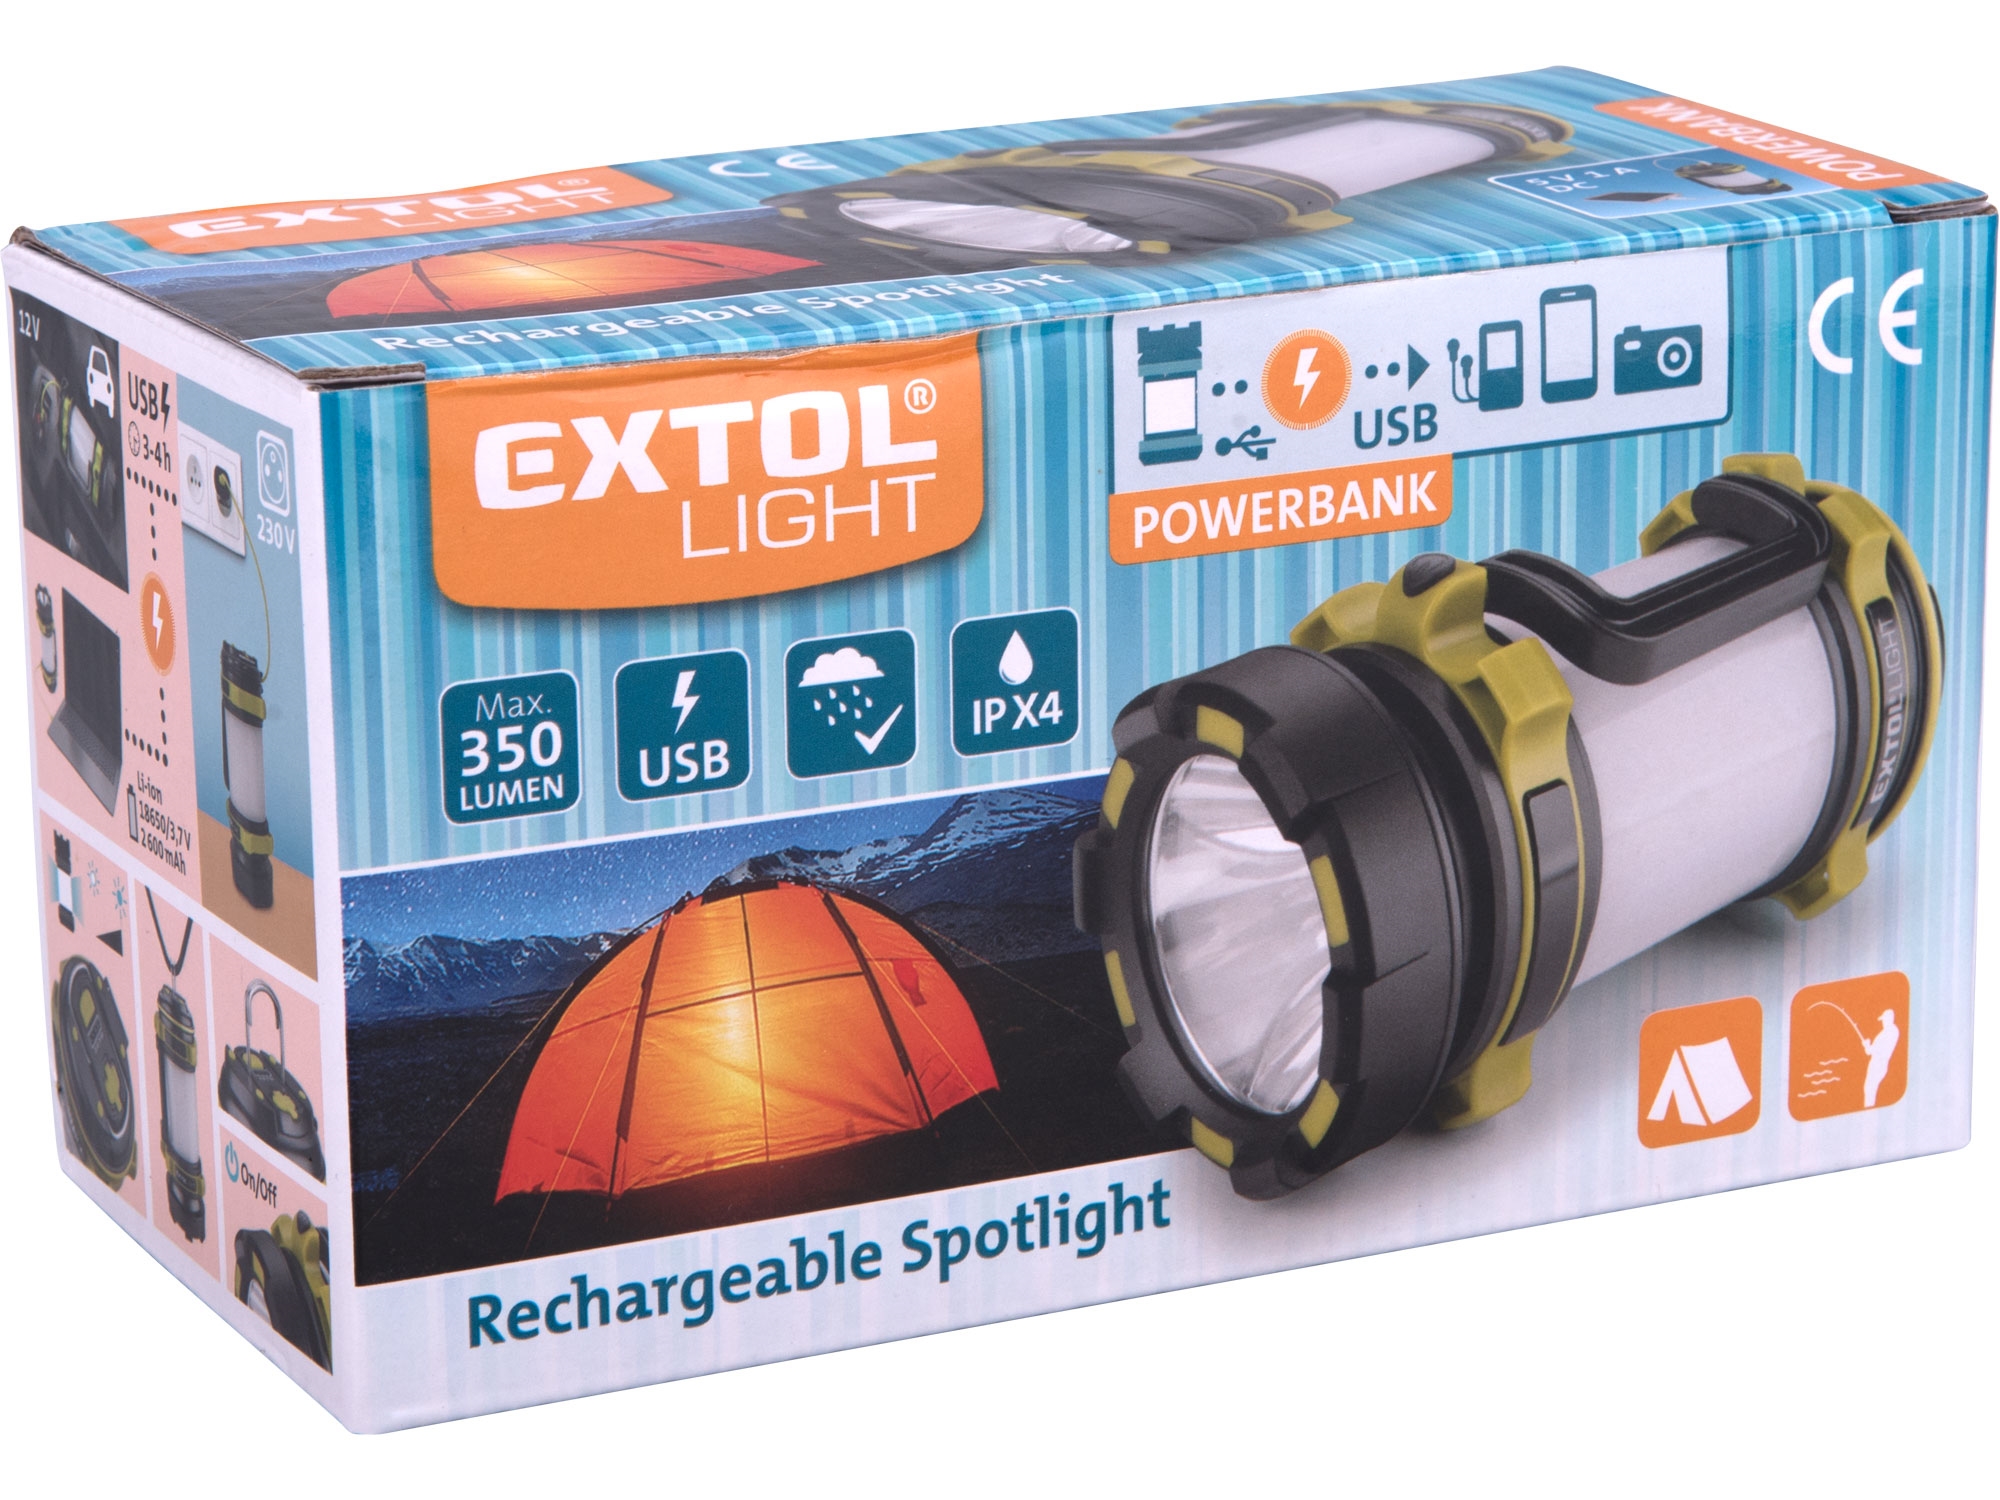 EXTOL svítilna 350lm, Cree XPG2 LED, 360° osvětlení, USB nabíjení s powerbankou, CREE XPG2 R5 LED + 